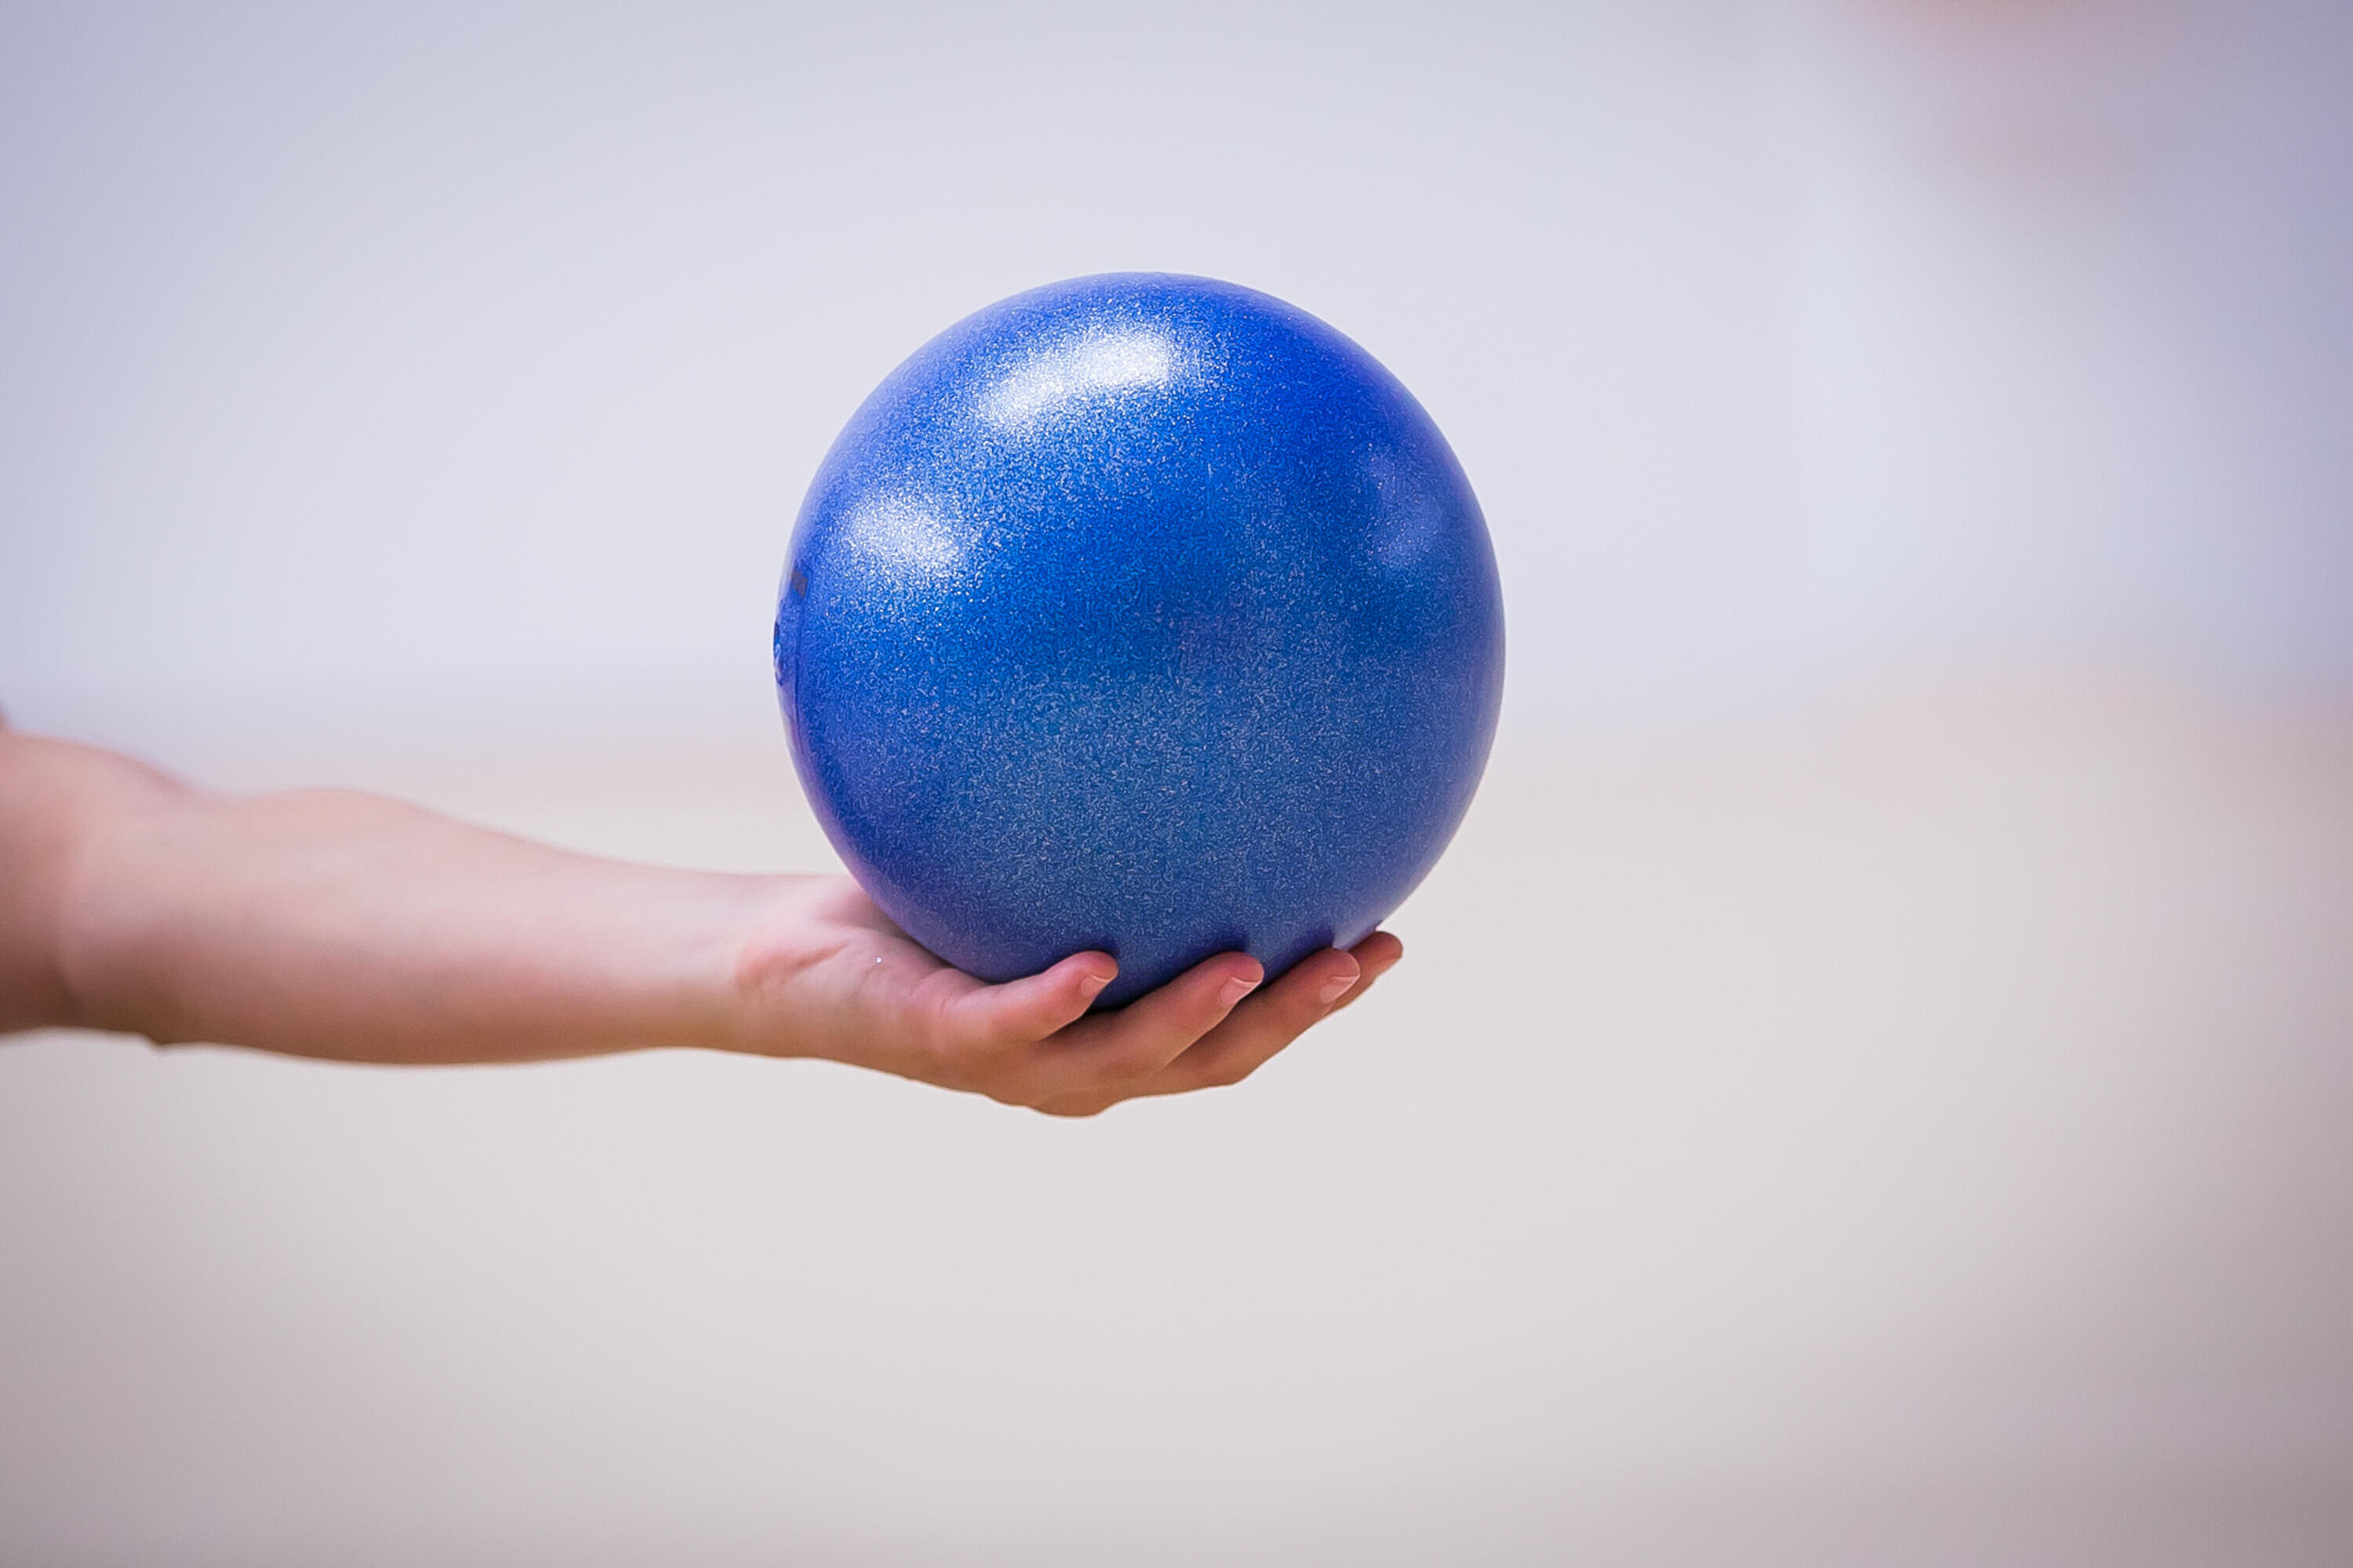 18.5 cm Rhythmic Gymnastics Ball - Indigo Blue 6/6